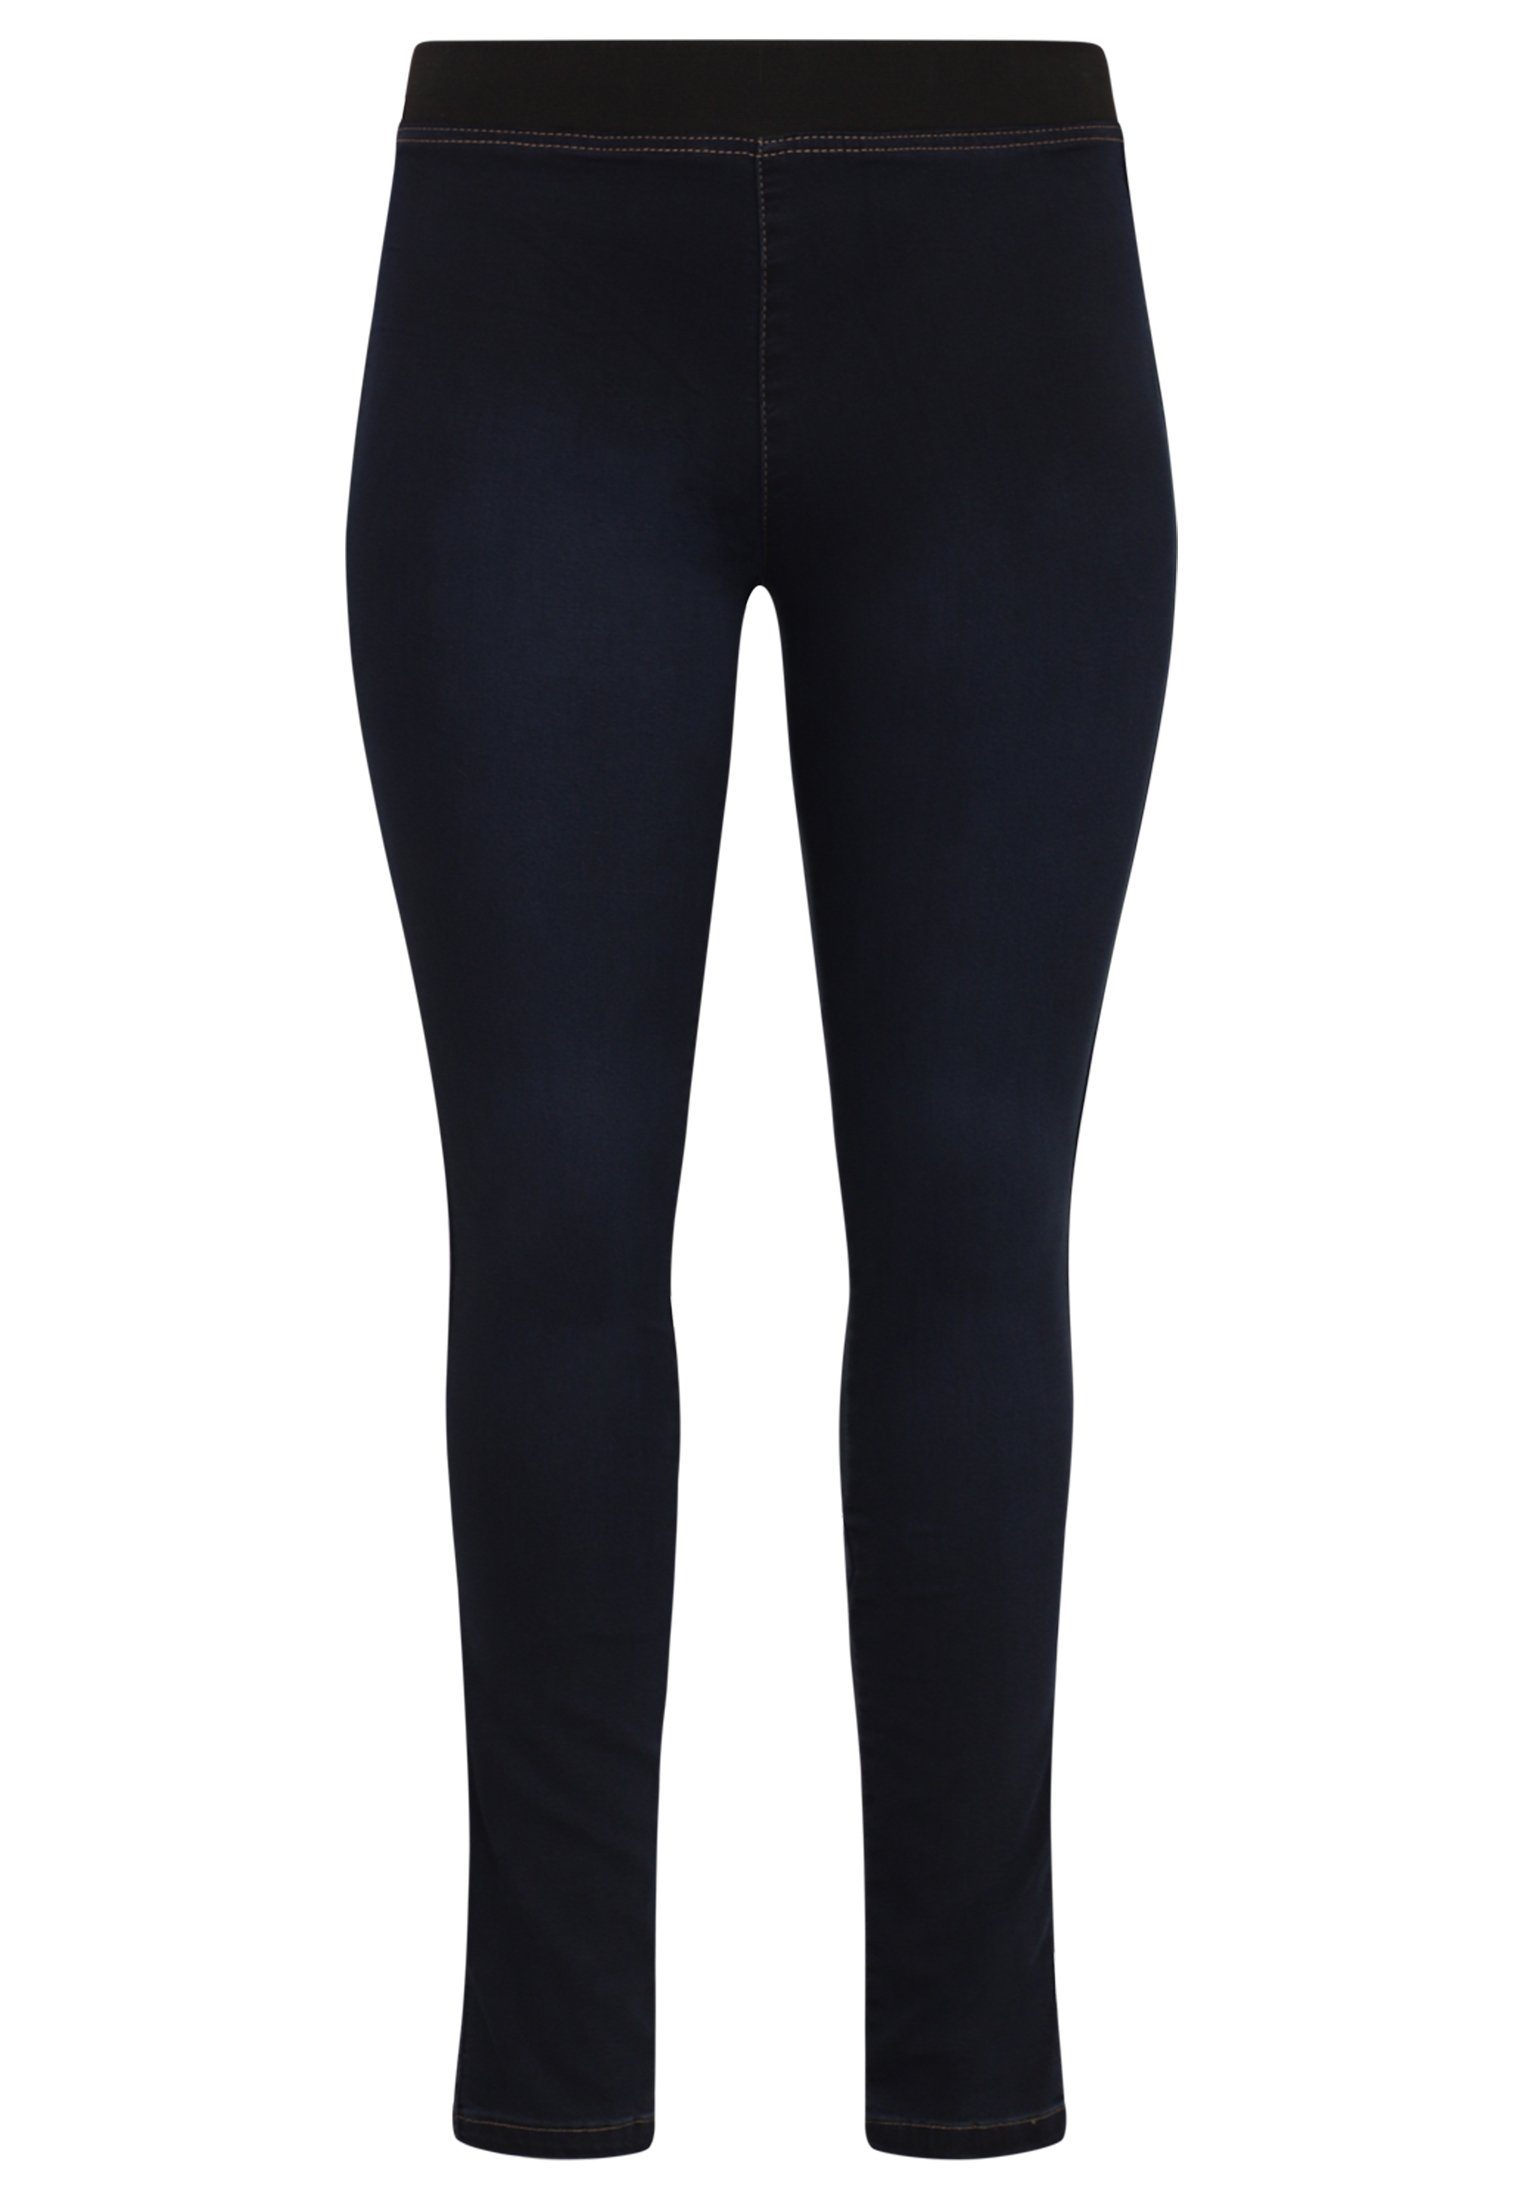 Yoek High-waist-Jeans Große Größen dark indigo